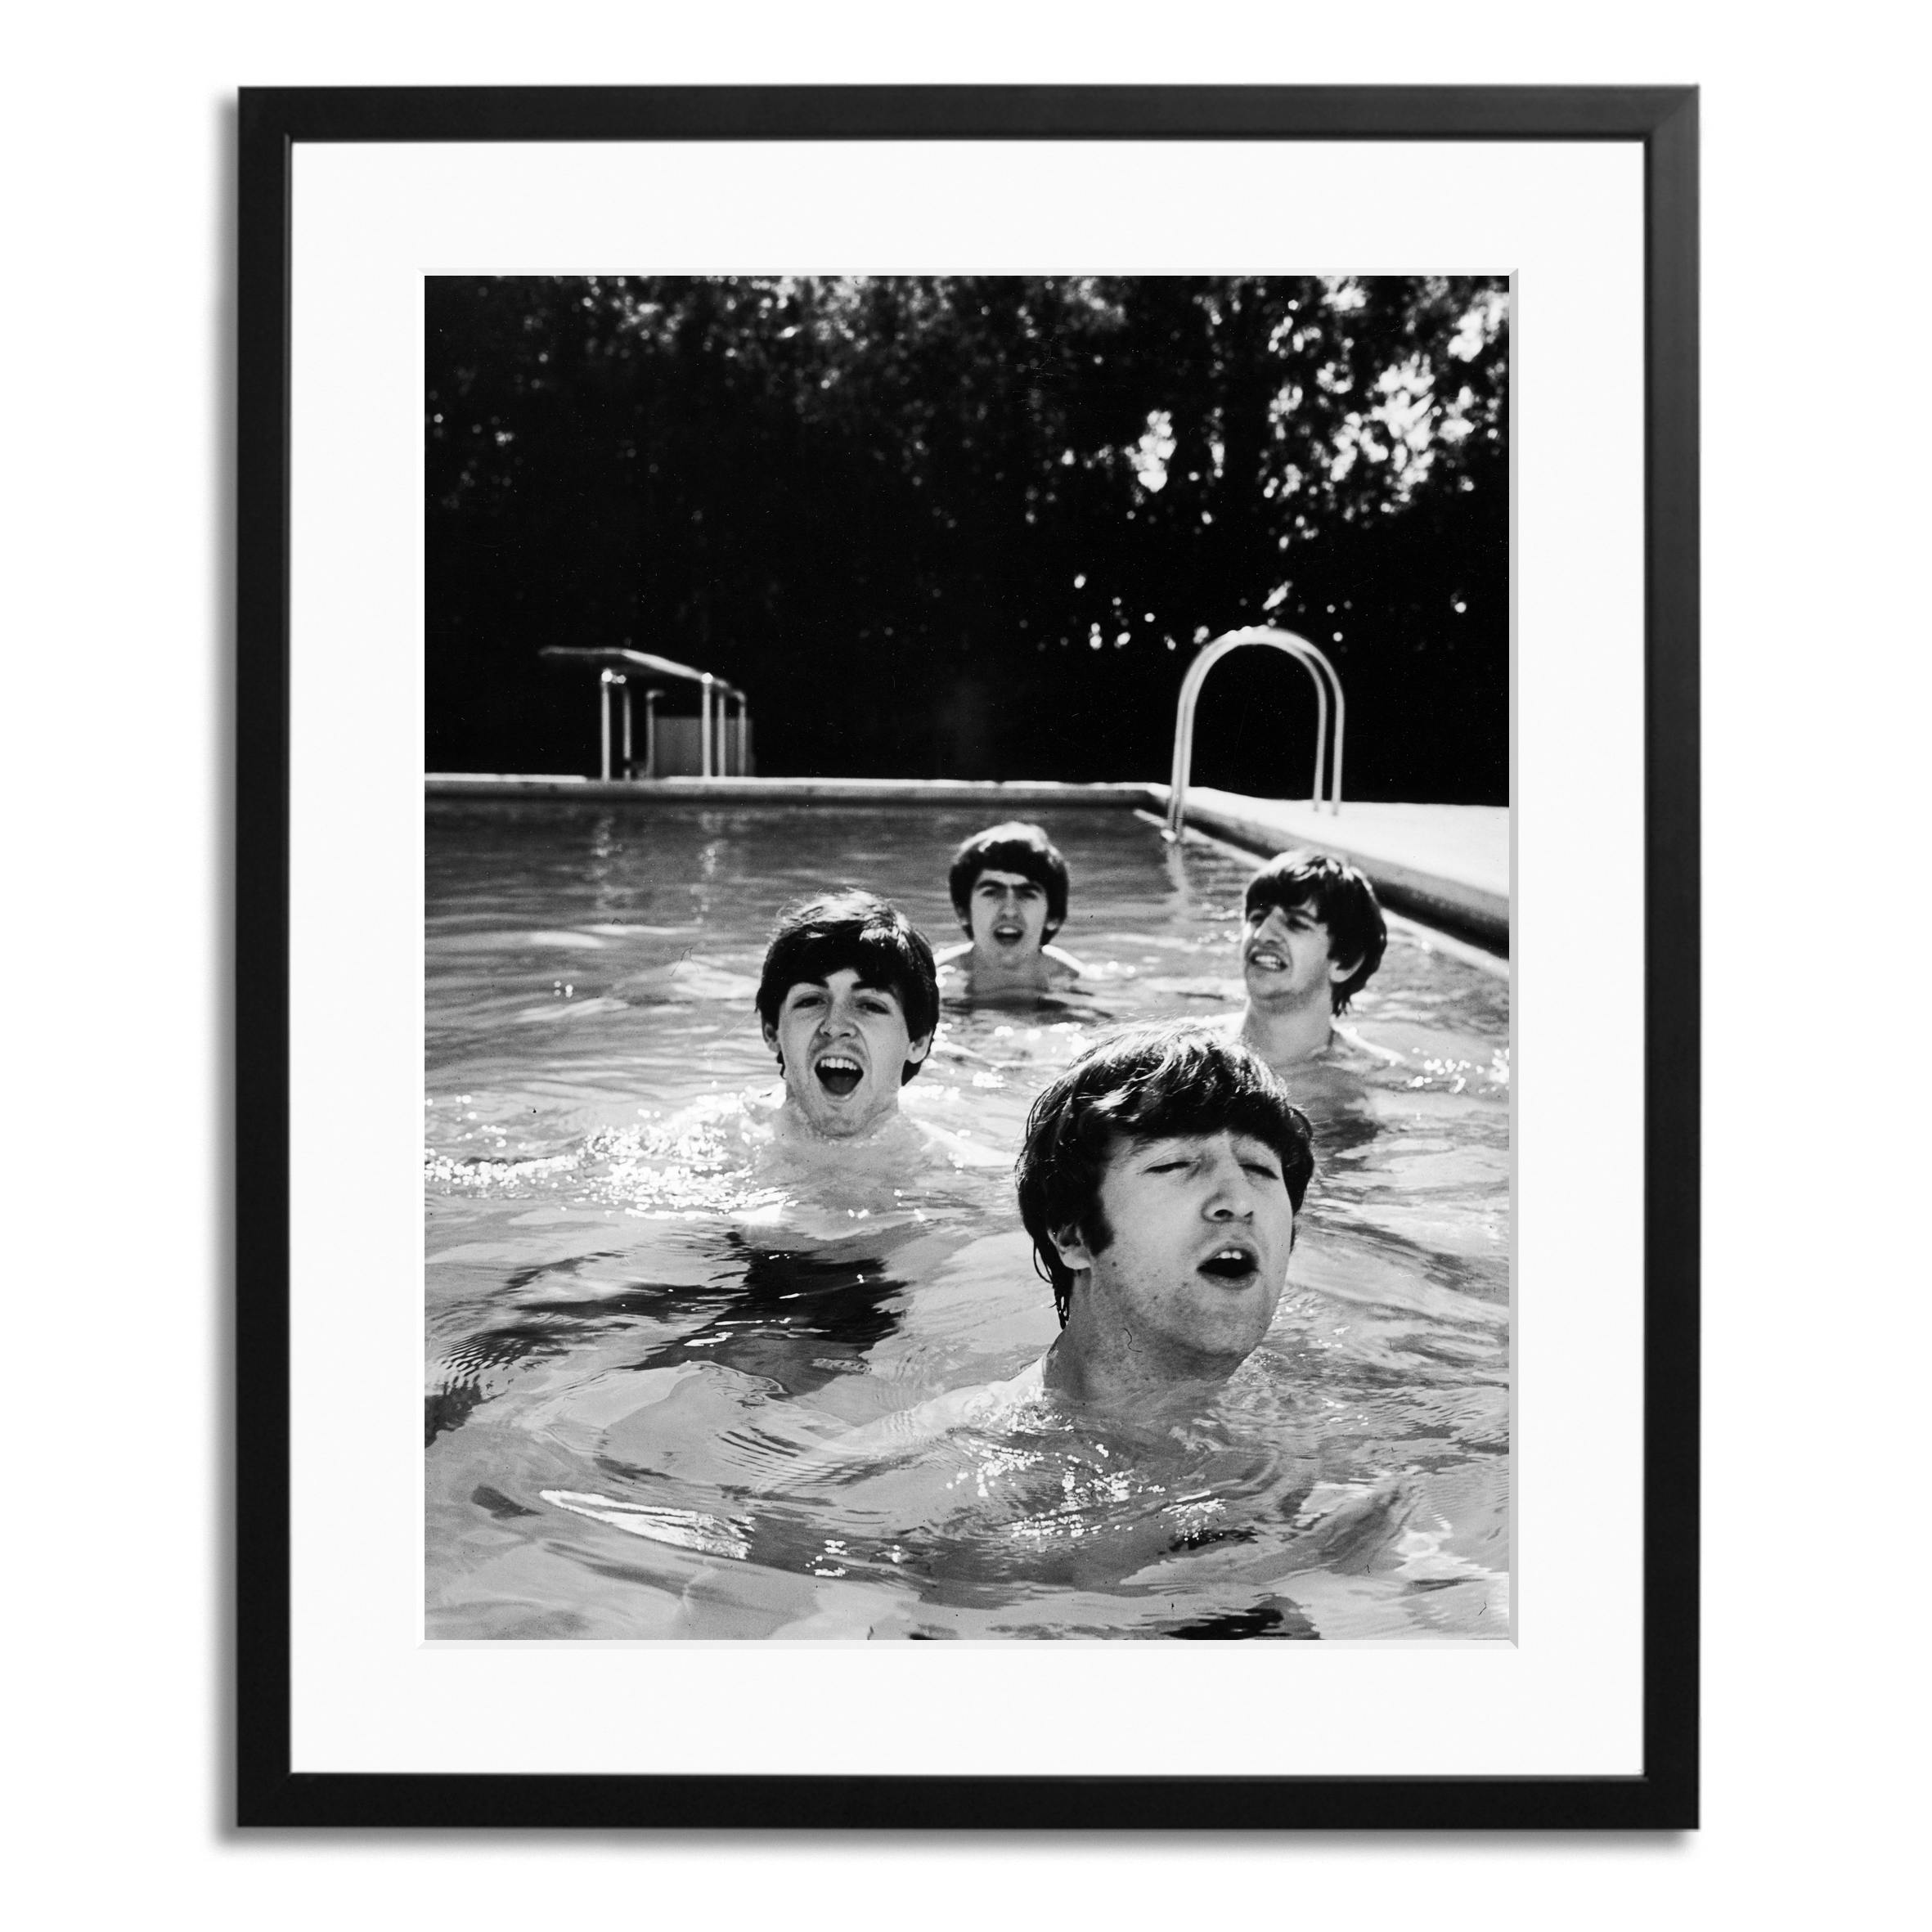 The Beatles Framed Print